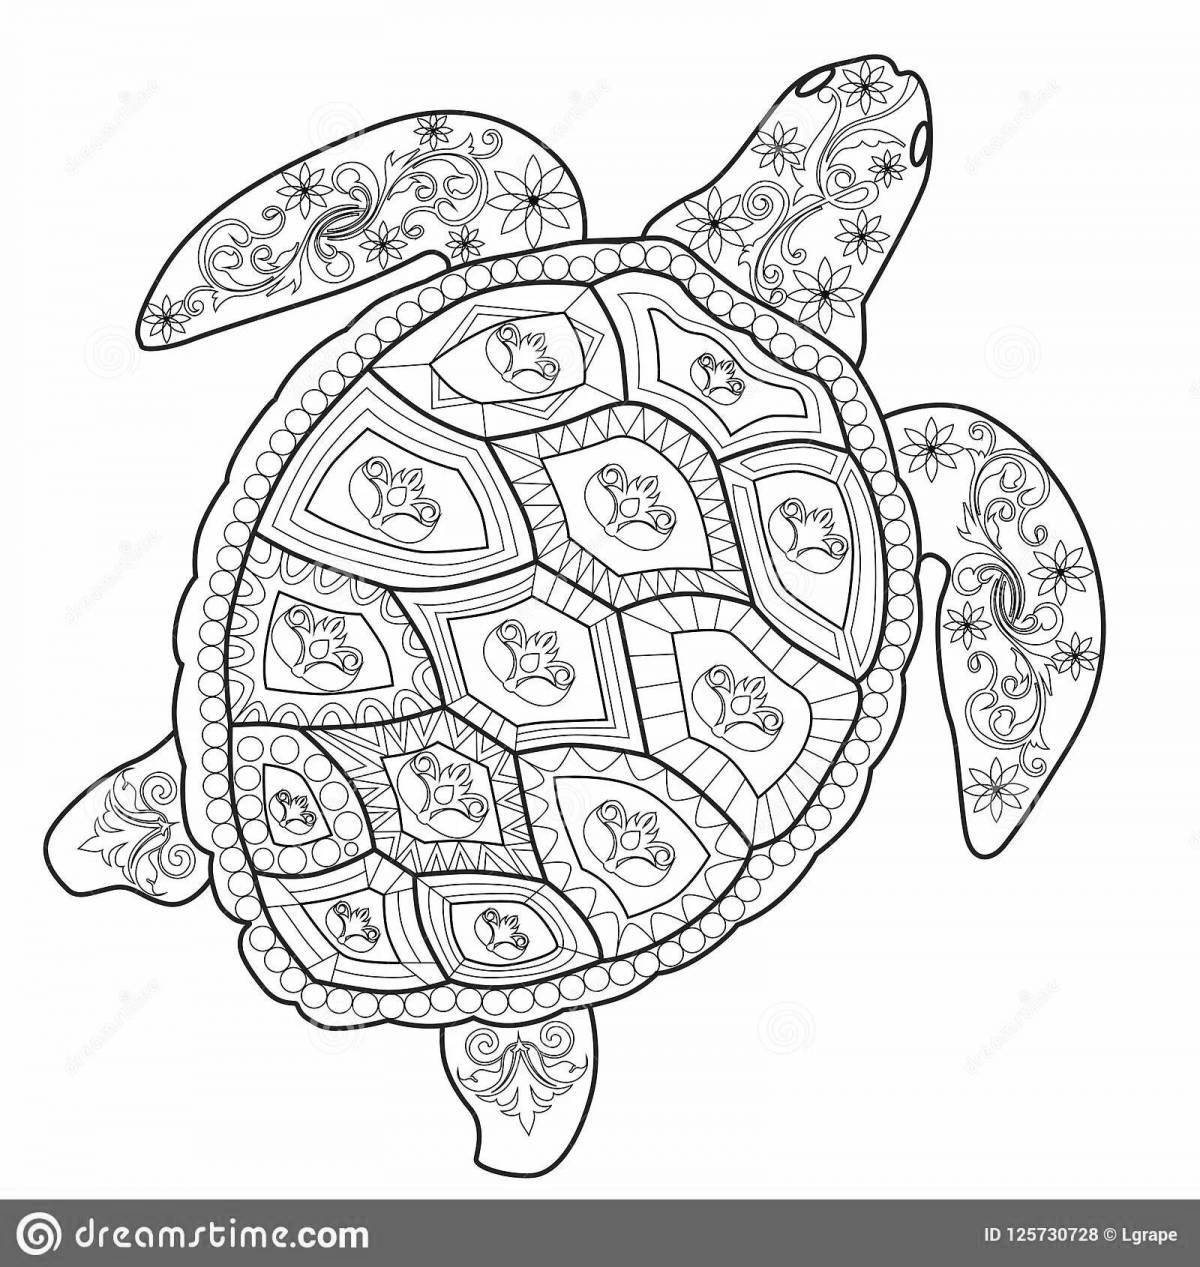 Colouring calm anti-stress turtle